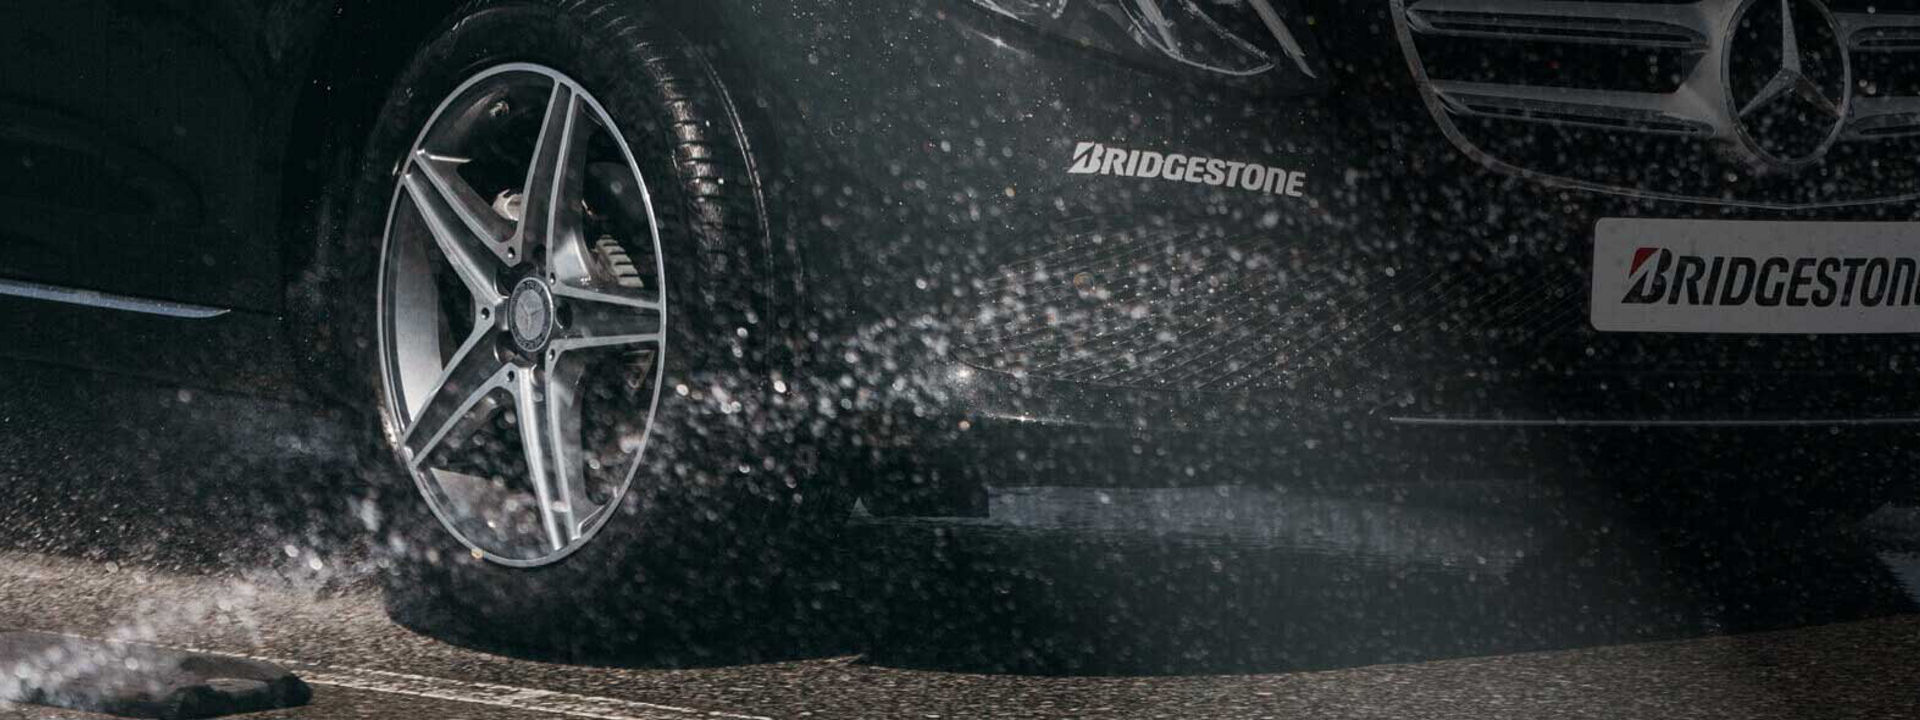 Εικόνα του ελαστικού Bridgestone Turanza σε κοντινό πλάνο, ενώ κινείται σε υγρές συνθήκες